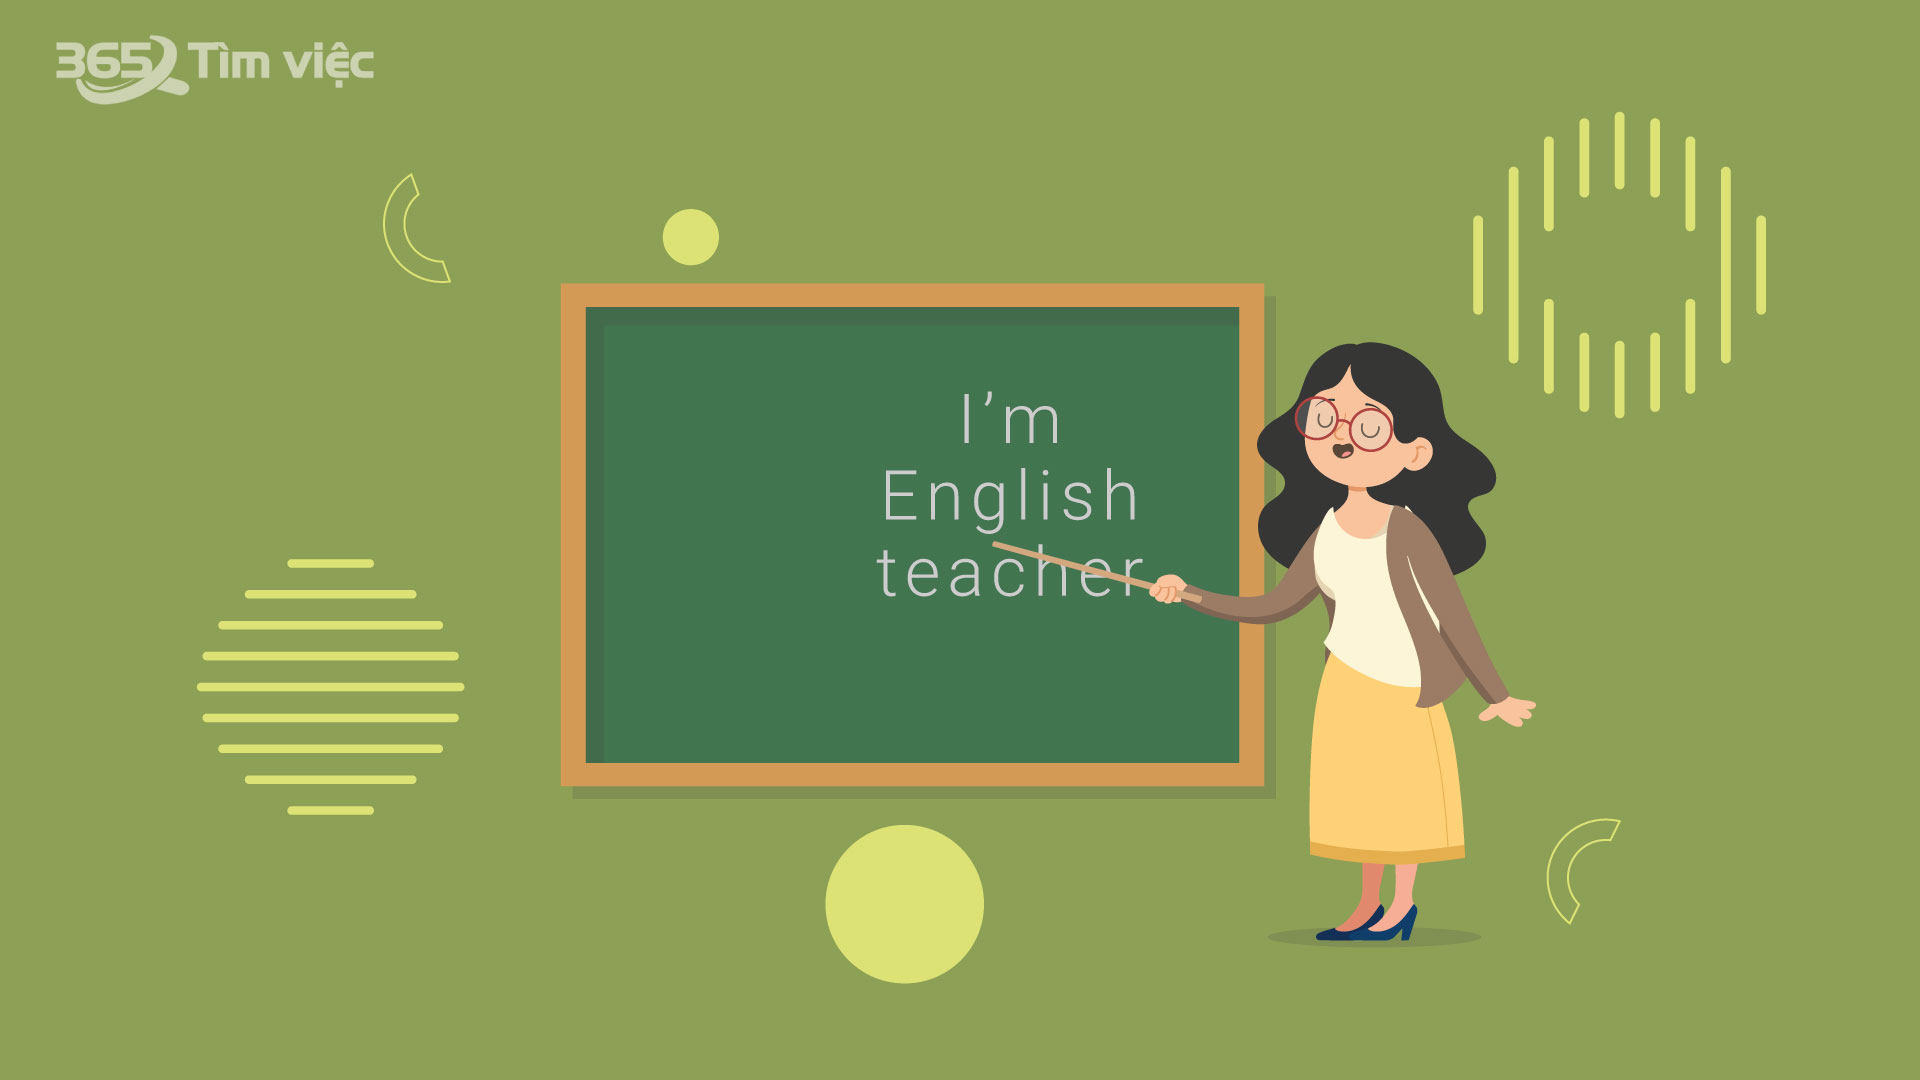 Học sinh gặp nhiều trở ngại trong quá trình học tiếng Anh, bạn sẽ làm gì